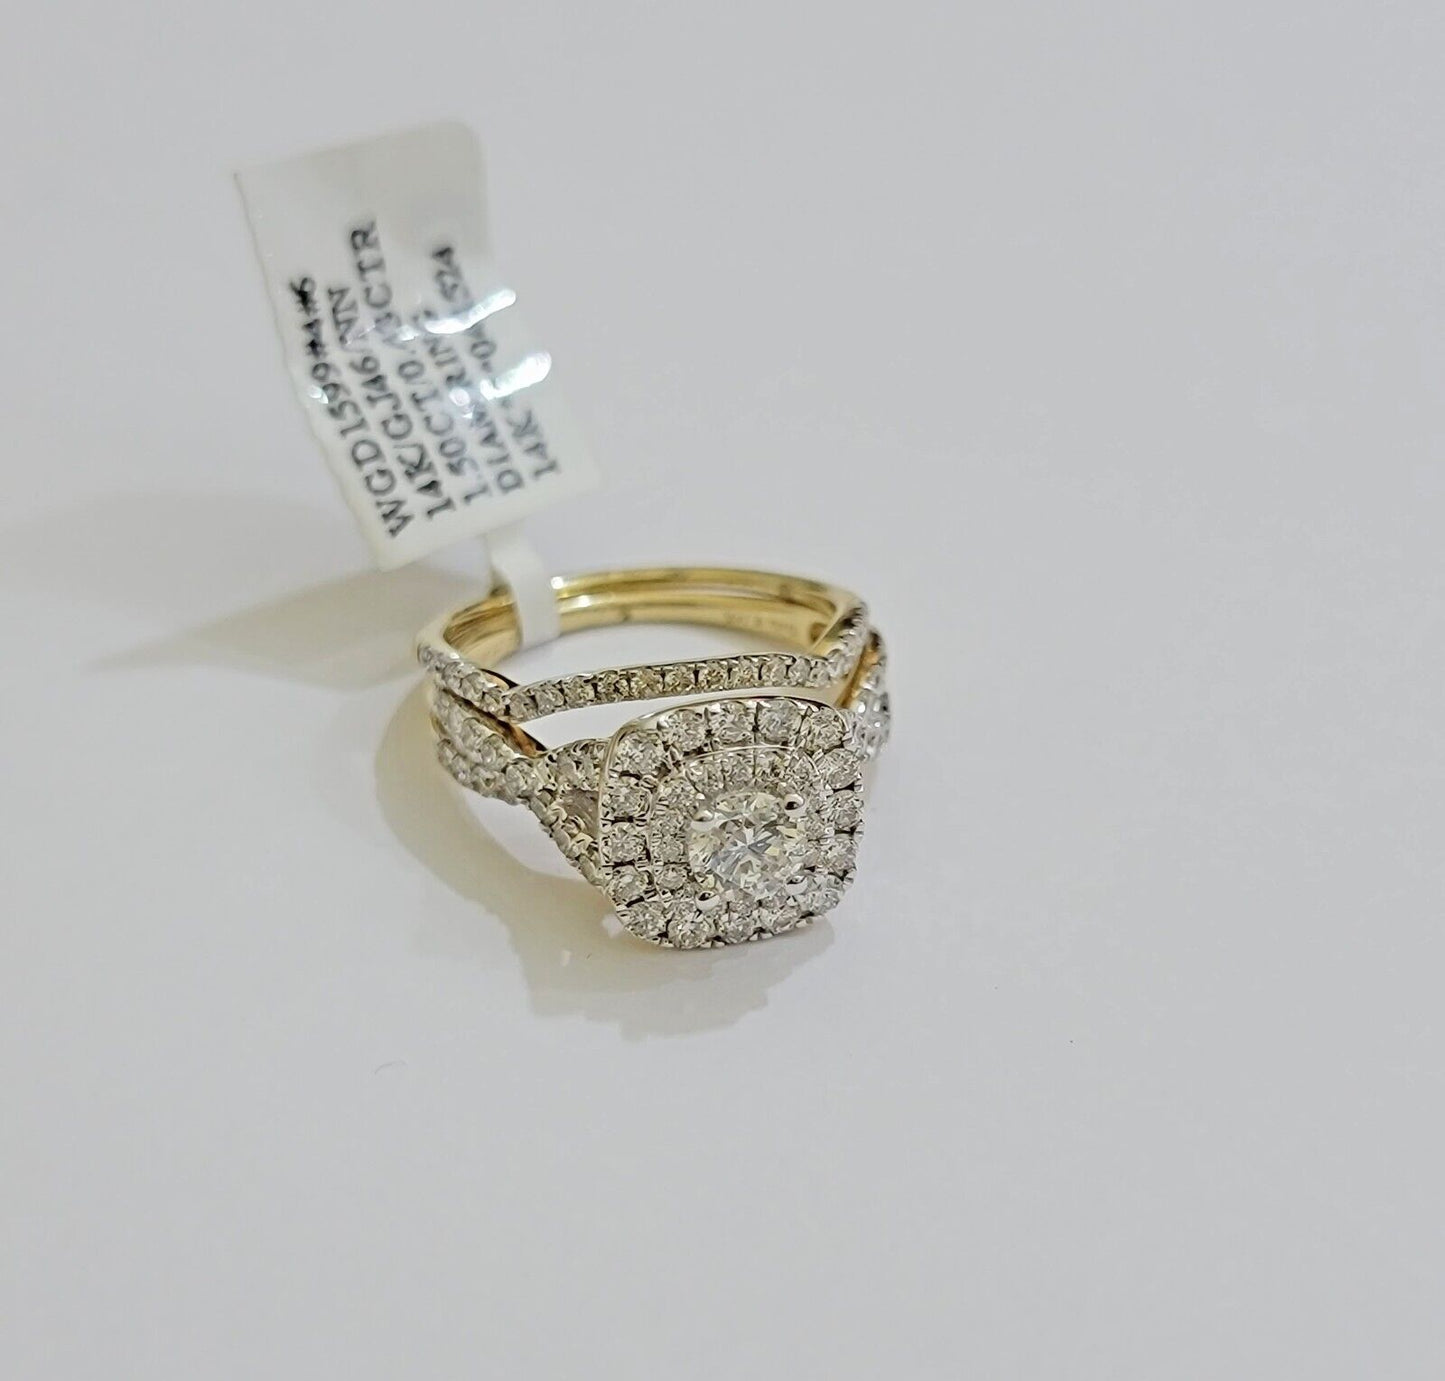 Real 14k Yellow Gold Diamond 1.5CT Ring band SET Ladies Women Engagement Wedding